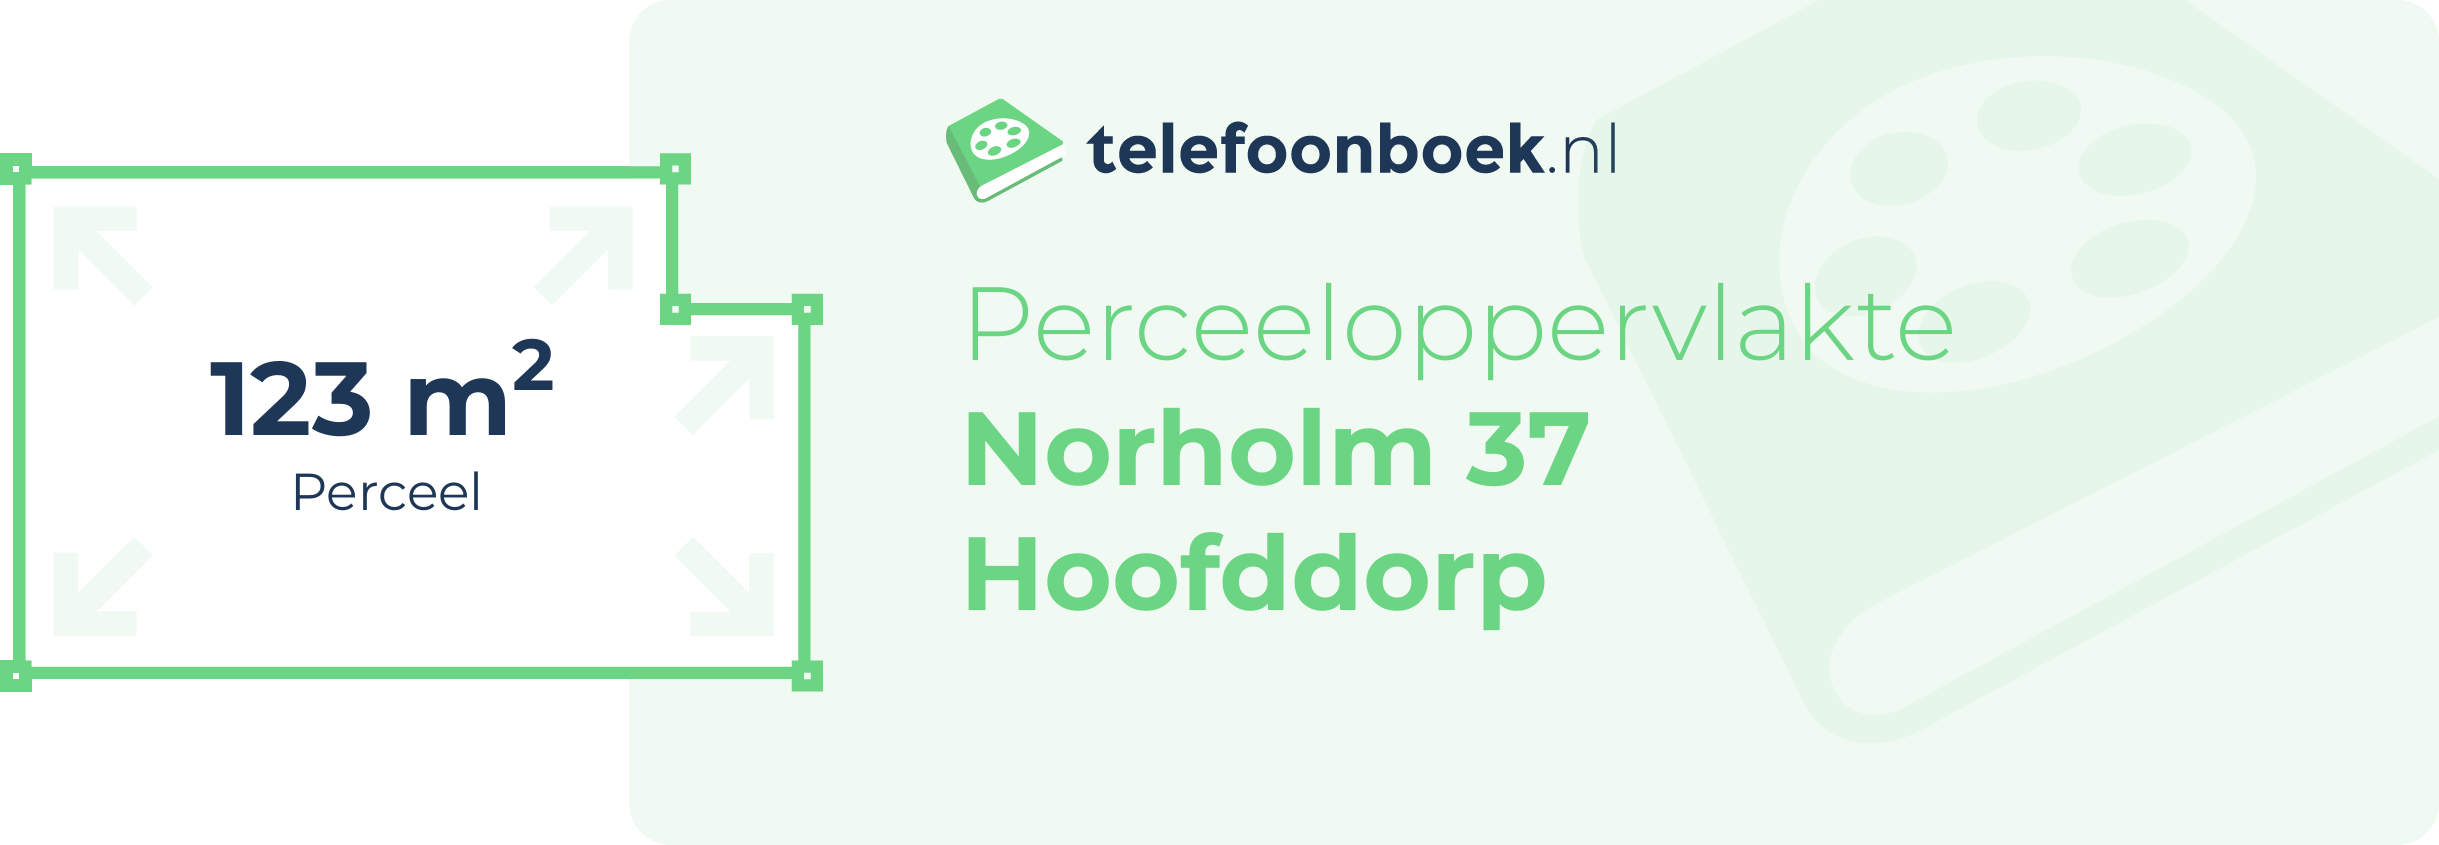 Perceeloppervlakte Norholm 37 Hoofddorp